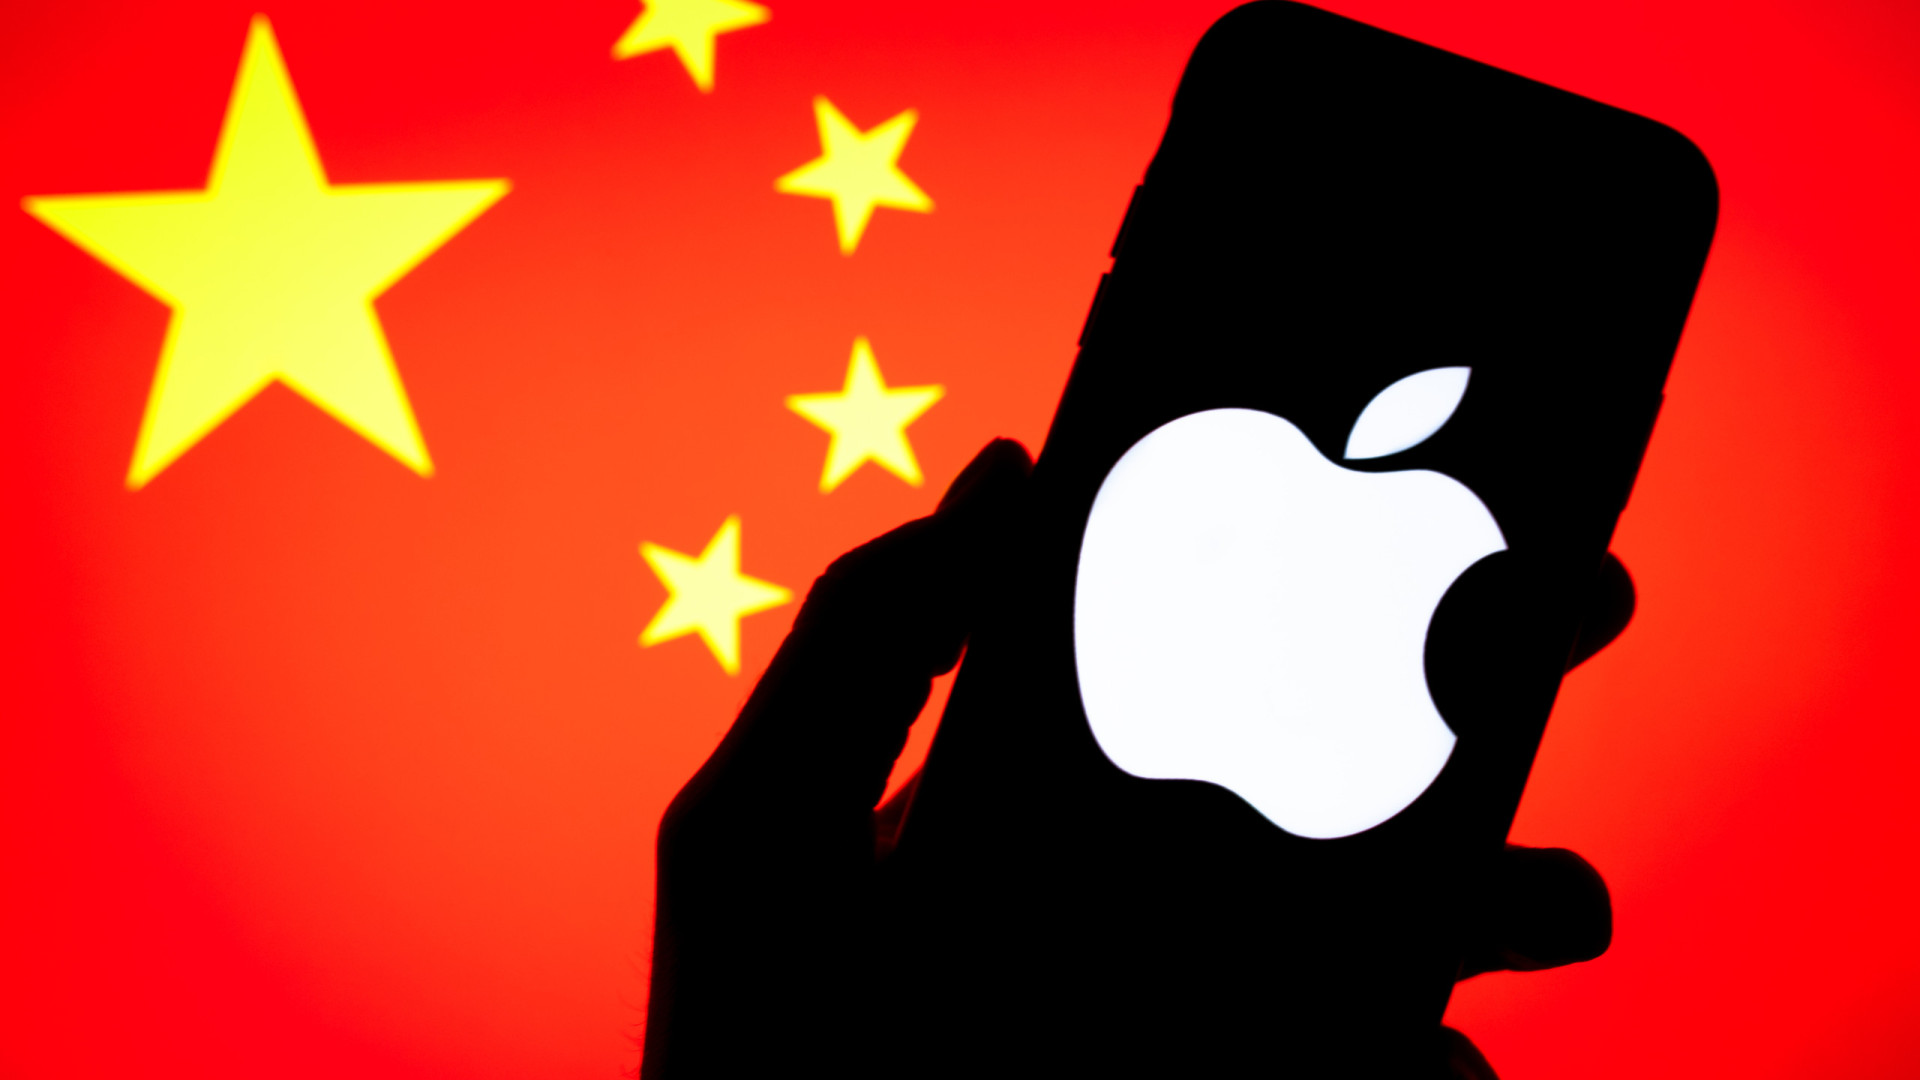 iPhone com IA leva Apple a negociar com gigante chinesa Baidu